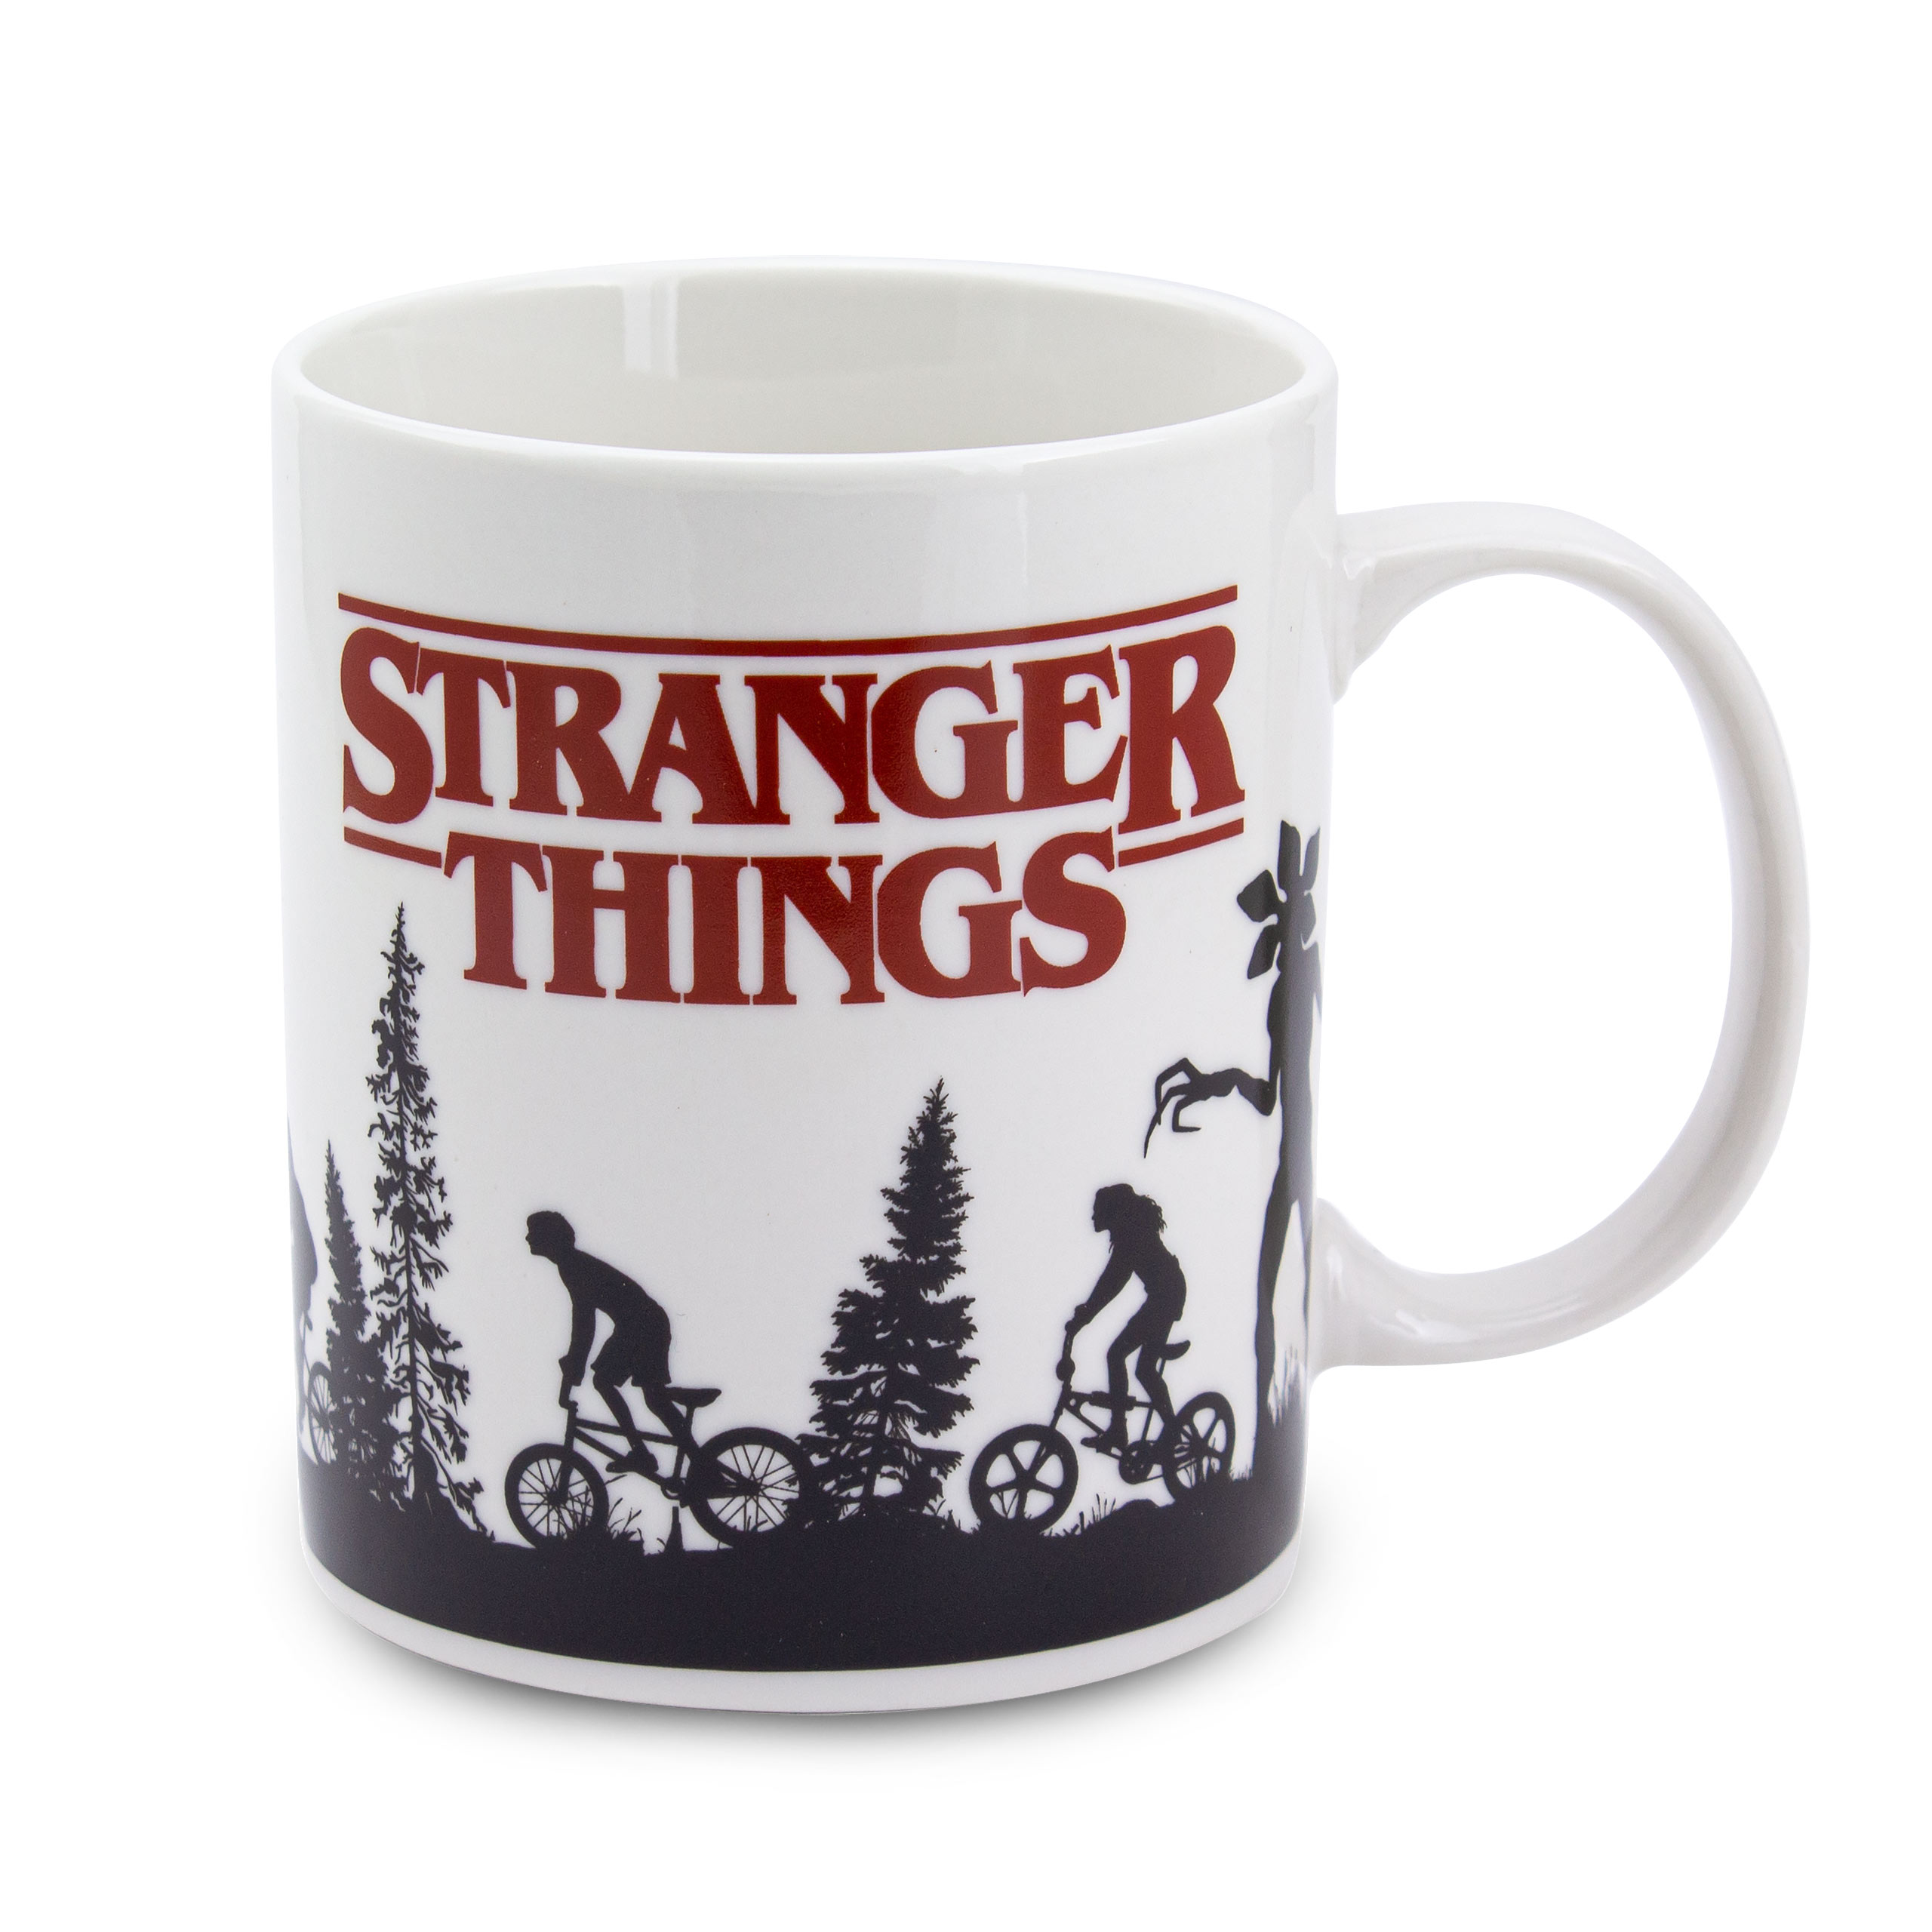 Stranger Things - Gift Set